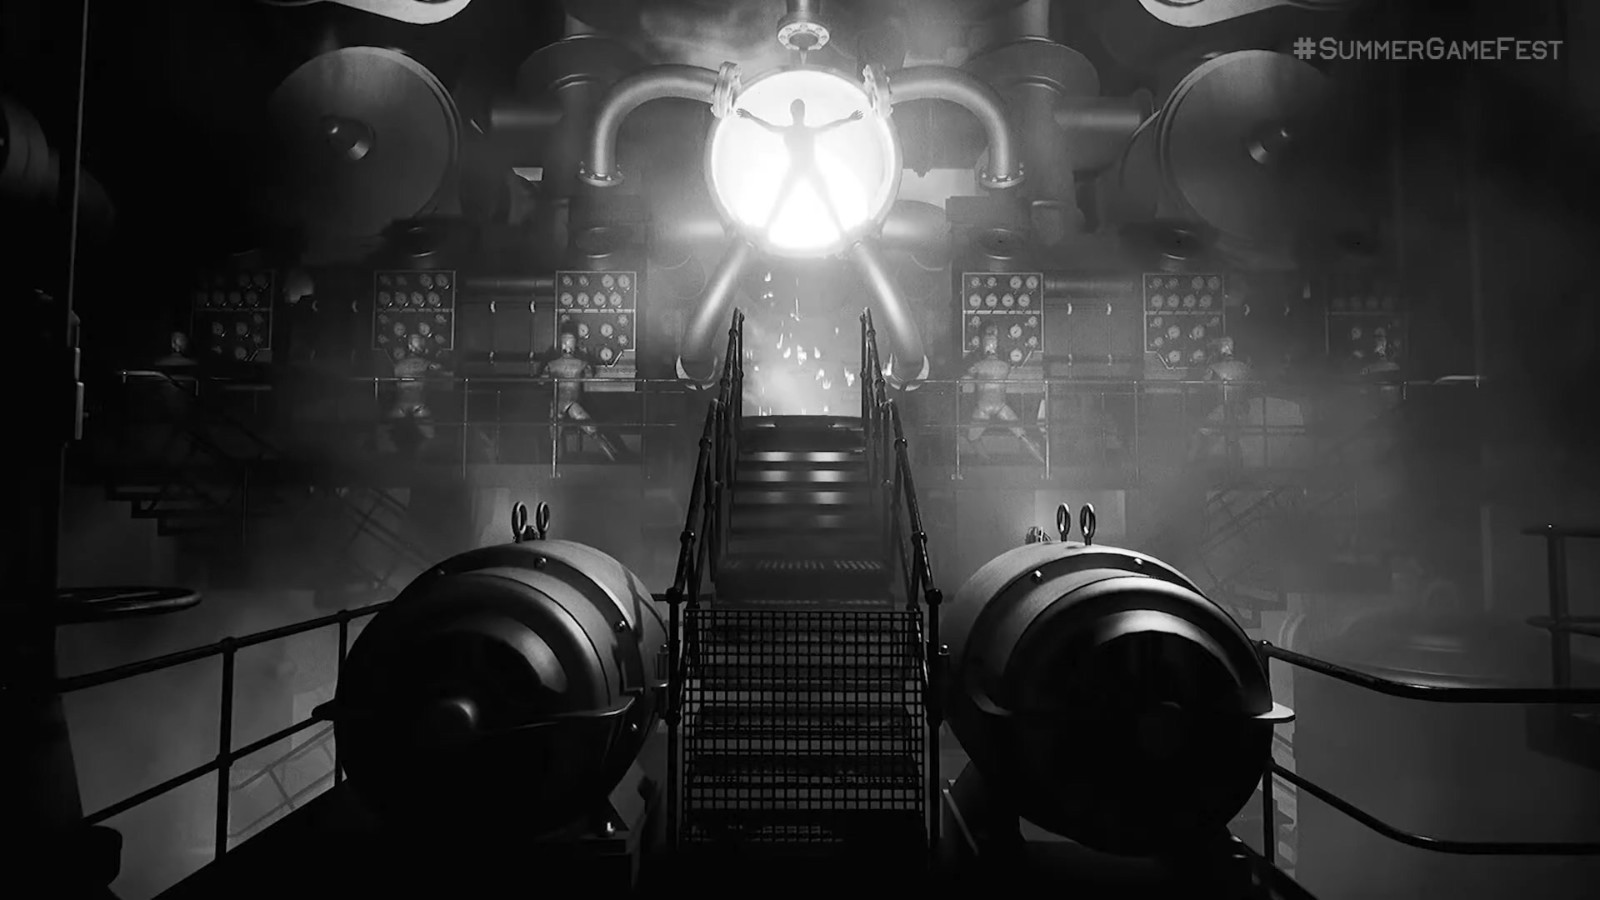 《层层恐惧3》正式公开 虚幻5引擎、2023年初发售